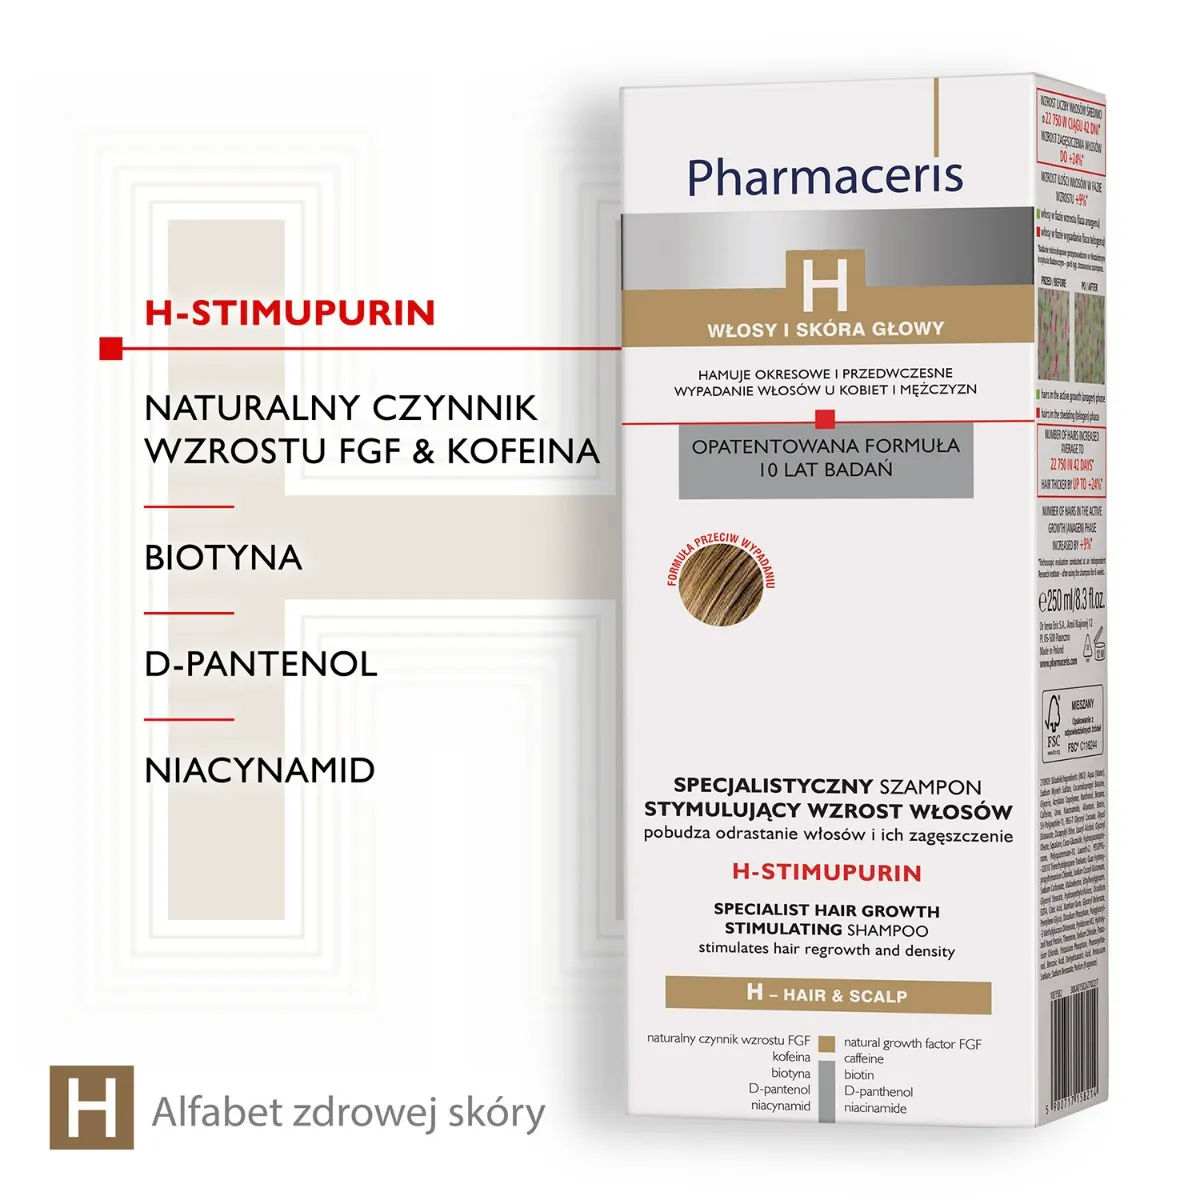 Pharmaceris H, H-Stimupurin, specjalistyczny szampon stymulujący wzrost włosów, 250 ml 